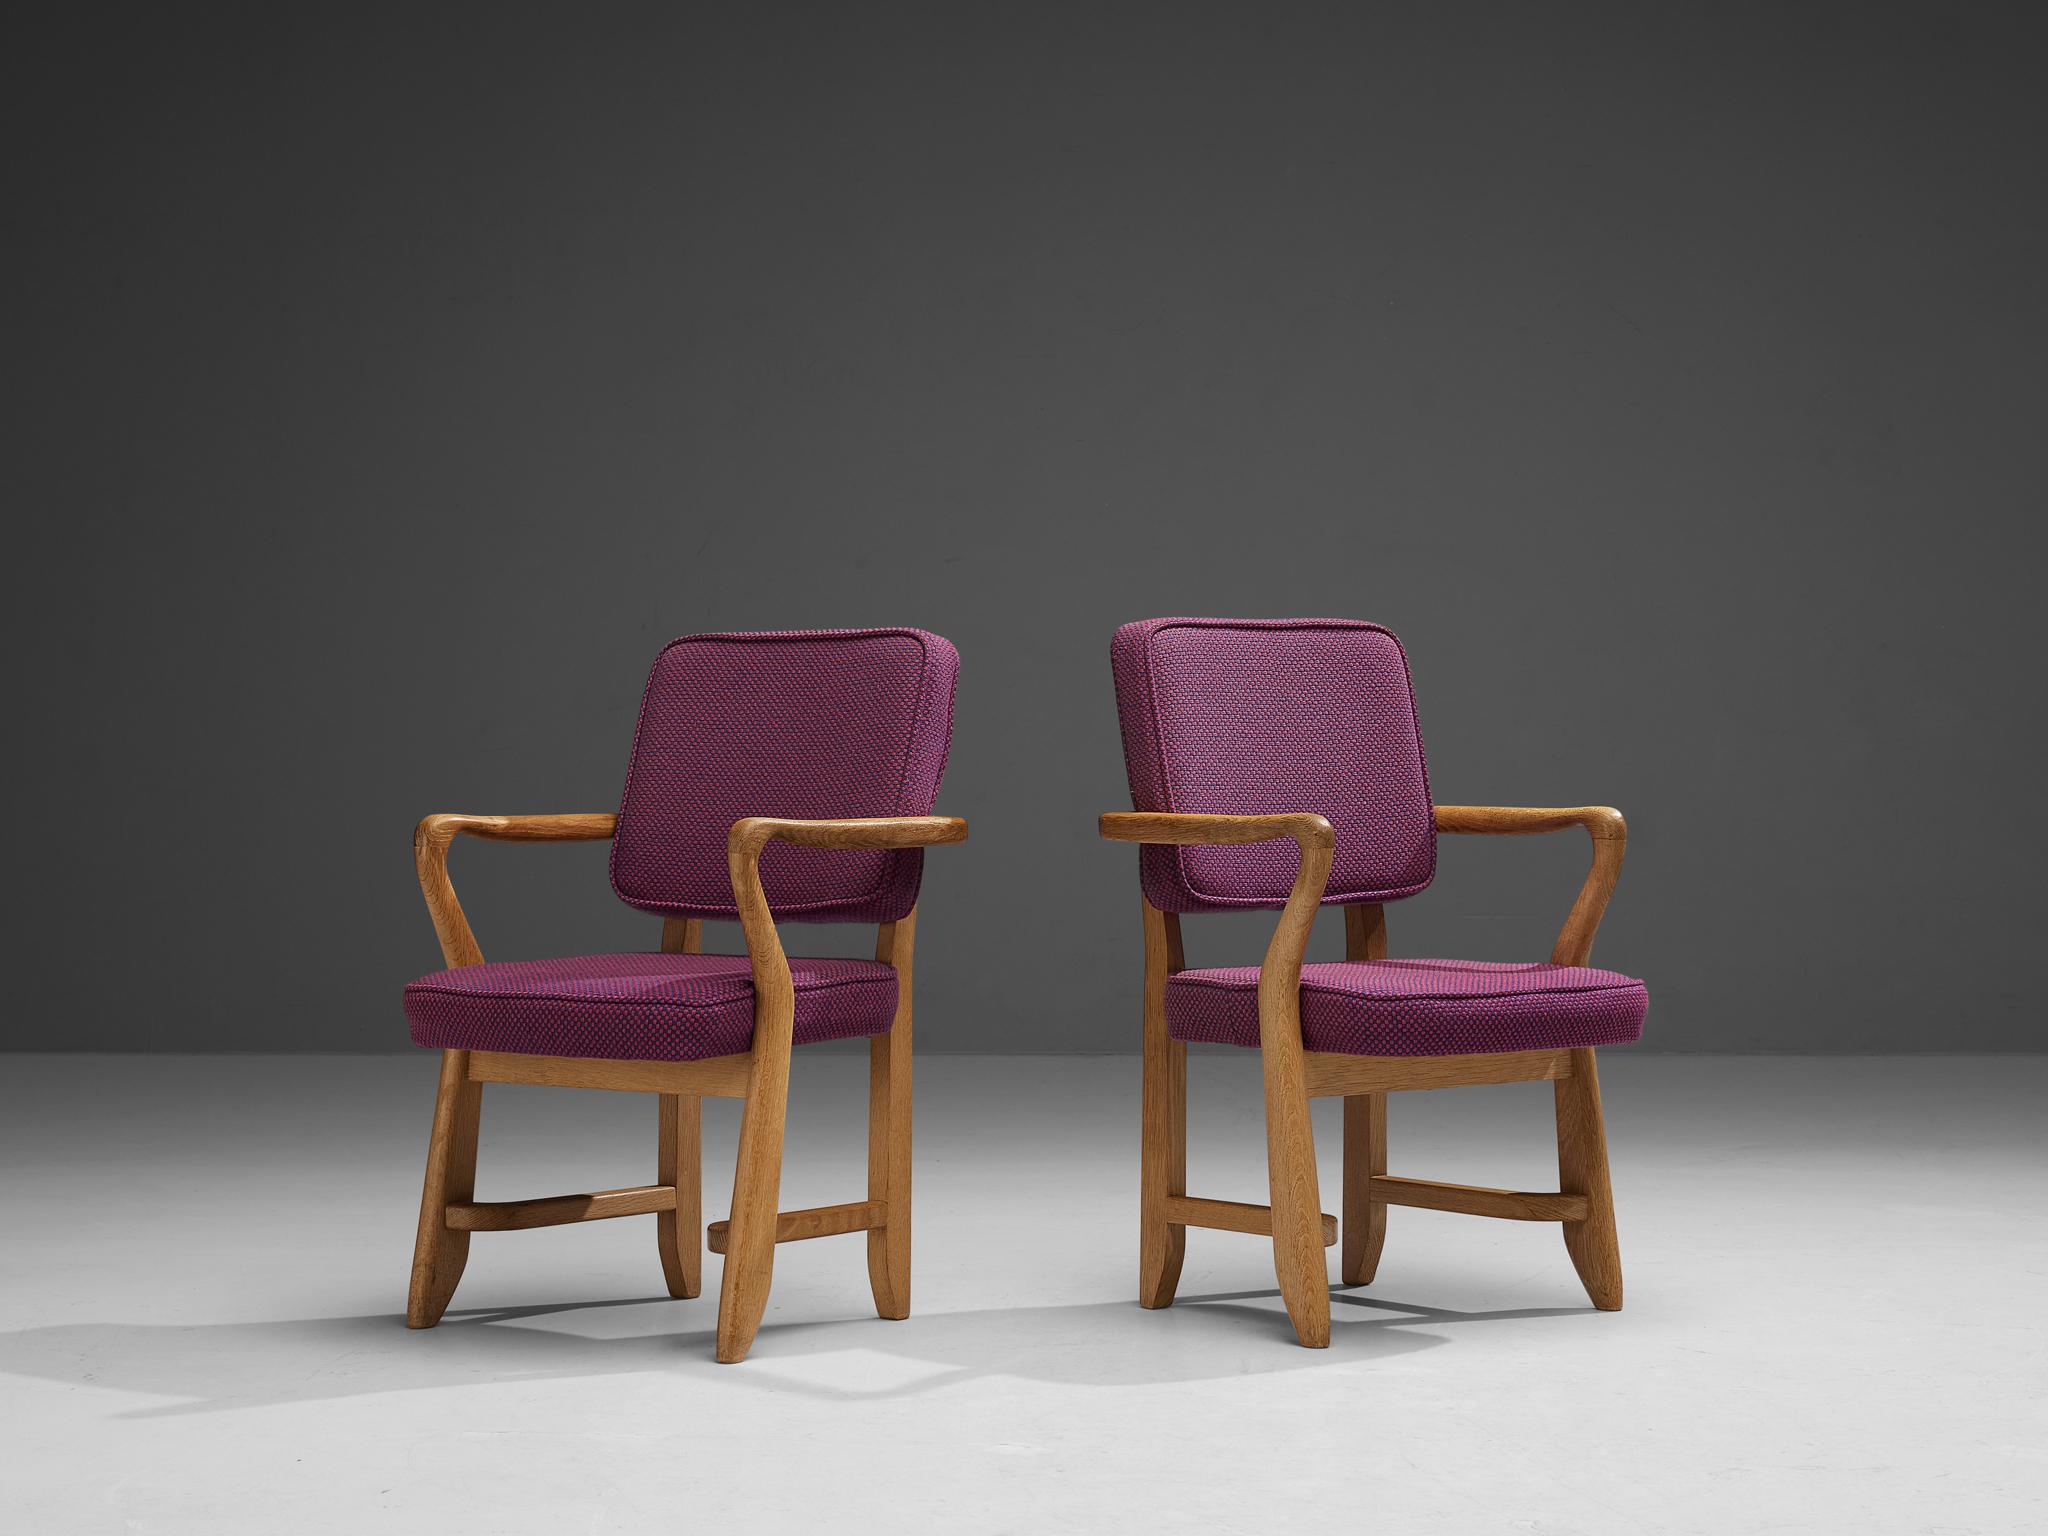 Guillerme et Chambron pour Votre Maison, paire de fauteuils, modèle 'Denis', tissu violet, chêne, France, années 1960

Ces fauteuils sculpturaux sont conçus par Guillerme et Chambron. Le duo est connu pour ses meubles en chêne massif de haute